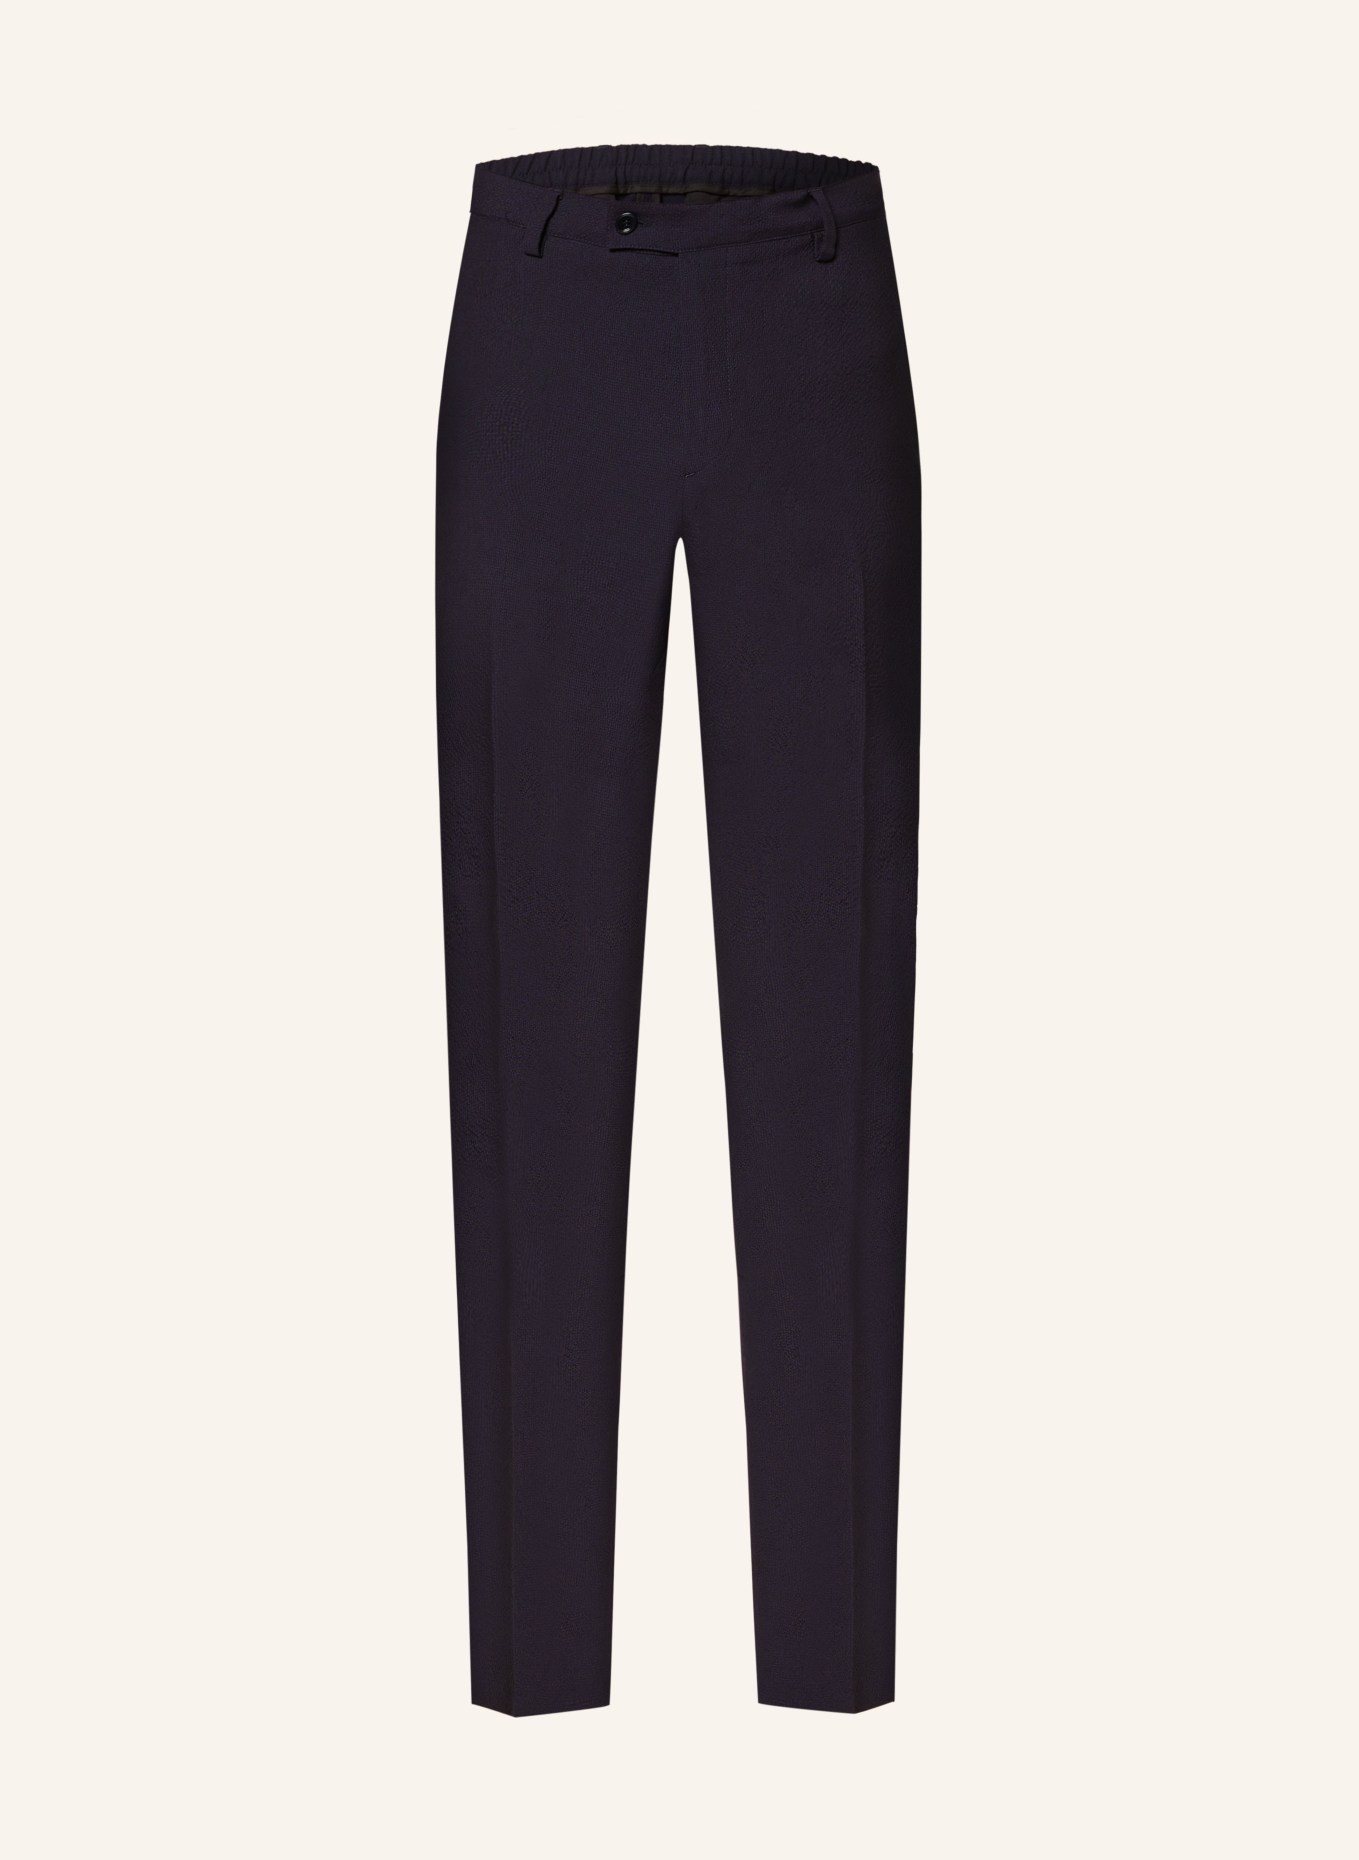 LARDINI Anzughose Slim Fit, Farbe: 850 NAVY (Bild 1)